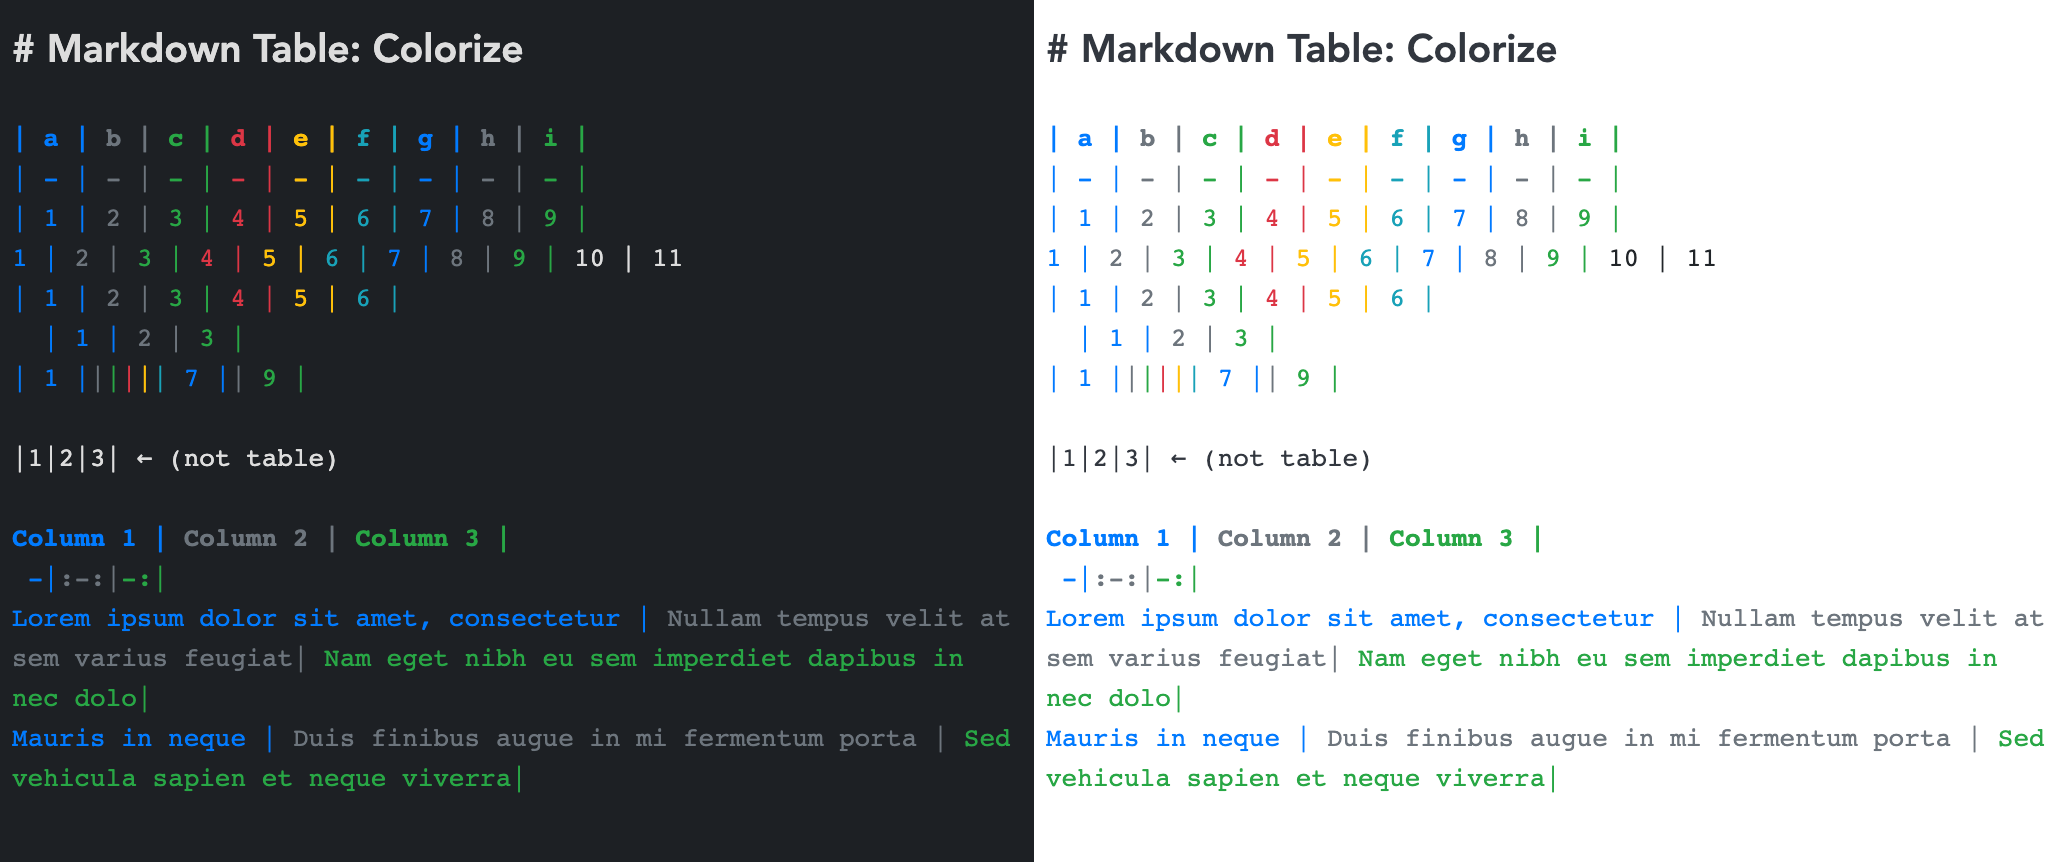 Joplin markdown table colorize sẽ giúp bạn chỉnh sửa bảng trong bài viết của mình một cách đơn giản và dễ dàng. Hãy xem hình ảnh và tìm hiểu cách tô màu cho bảng, chỉnh sửa đường viền và đổ bóng để làm cho bài viết của bạn càng thêm sáng tạo và đầy sức sống.